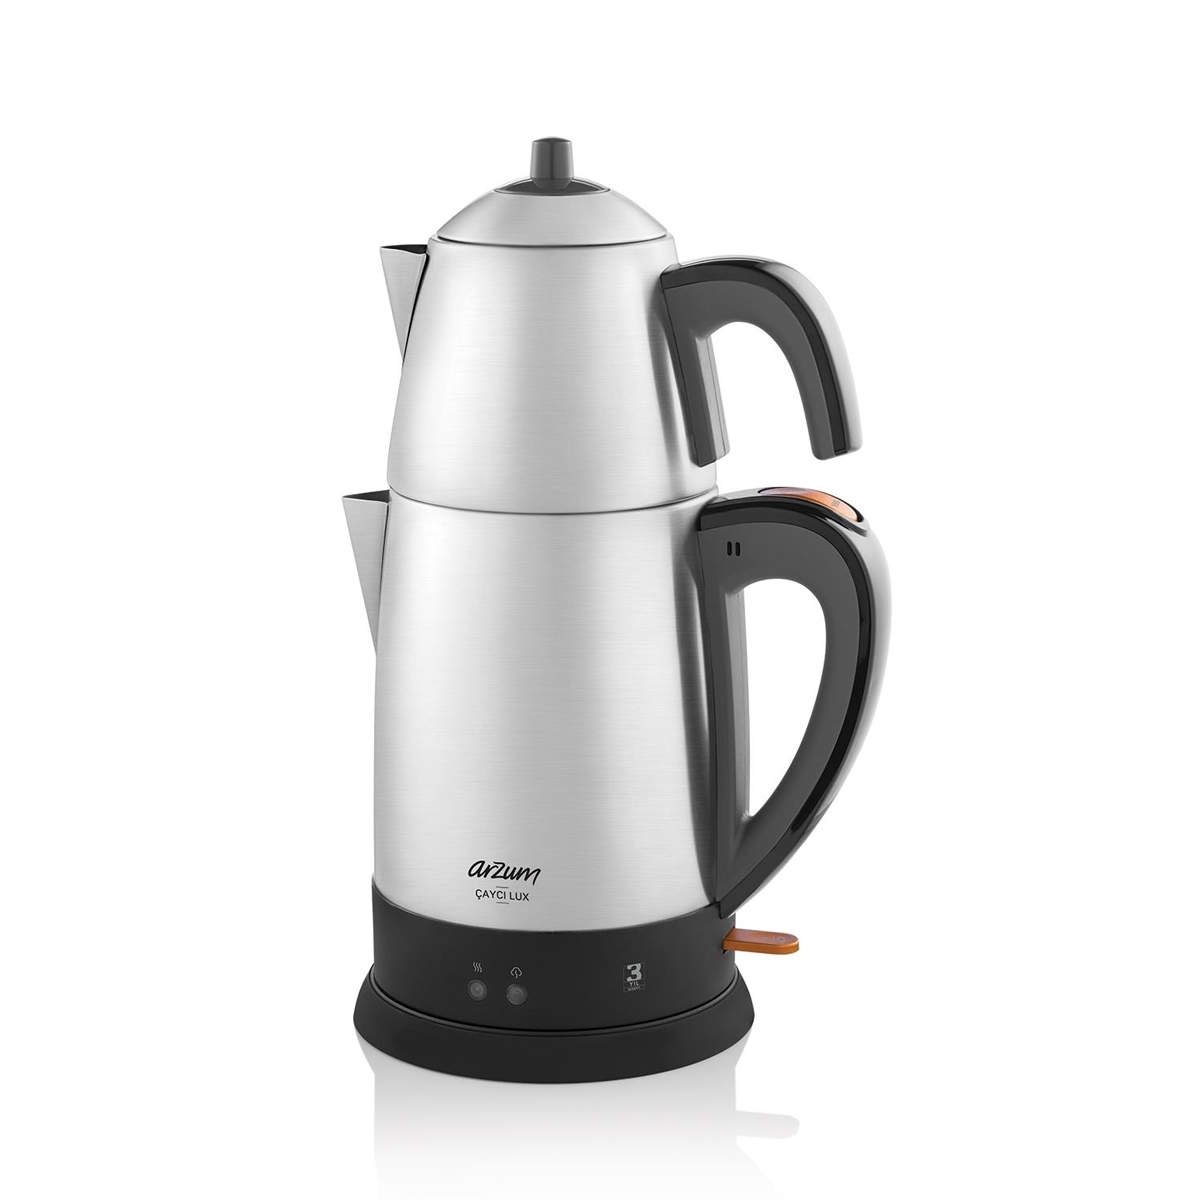 Arzum Çaycı Lux Çay Makinesi - Paslanmaz Çelik - Thumbnail